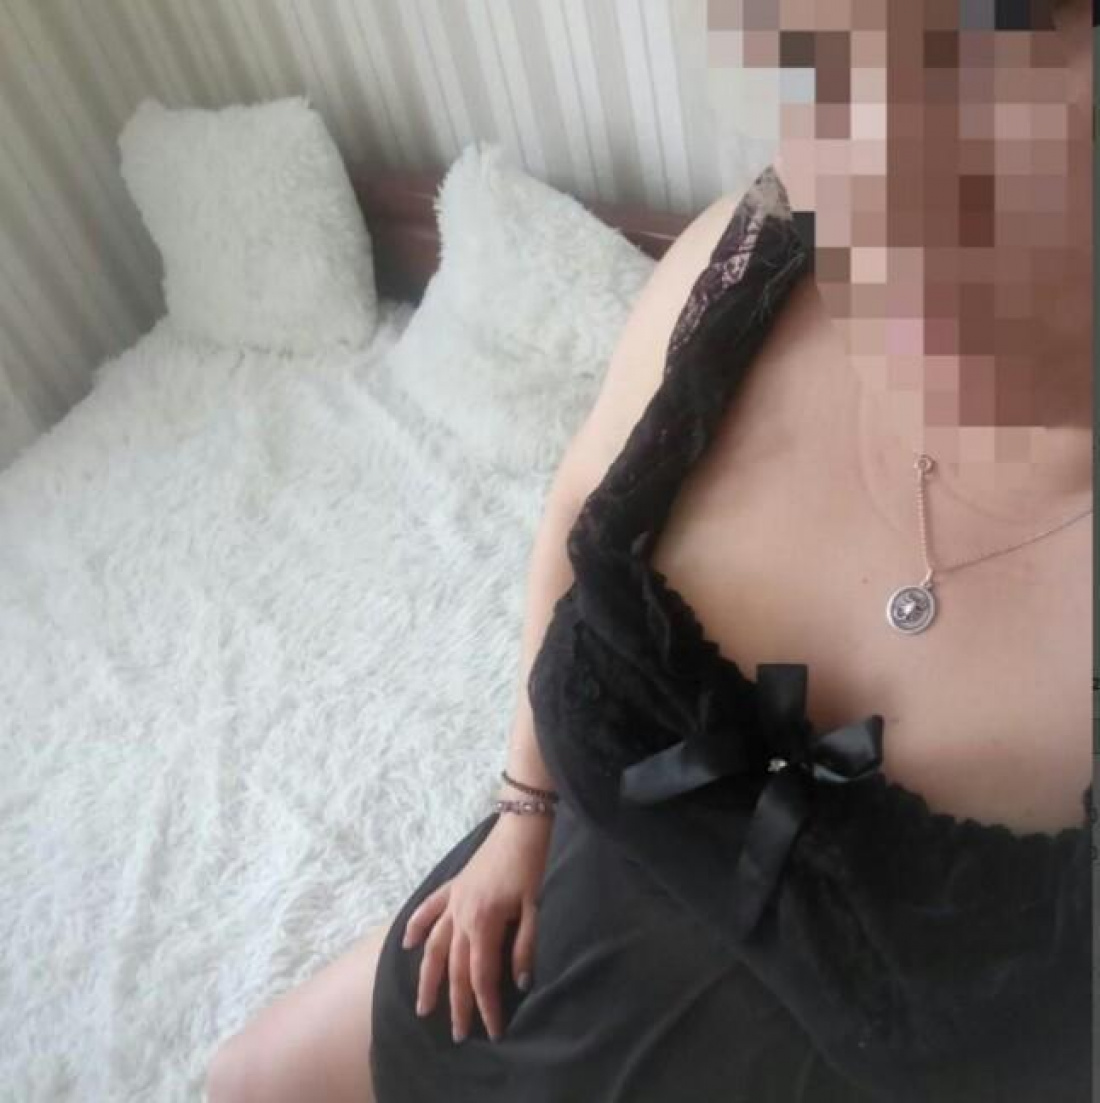 Вика: проститутки индивидуалки в Казани